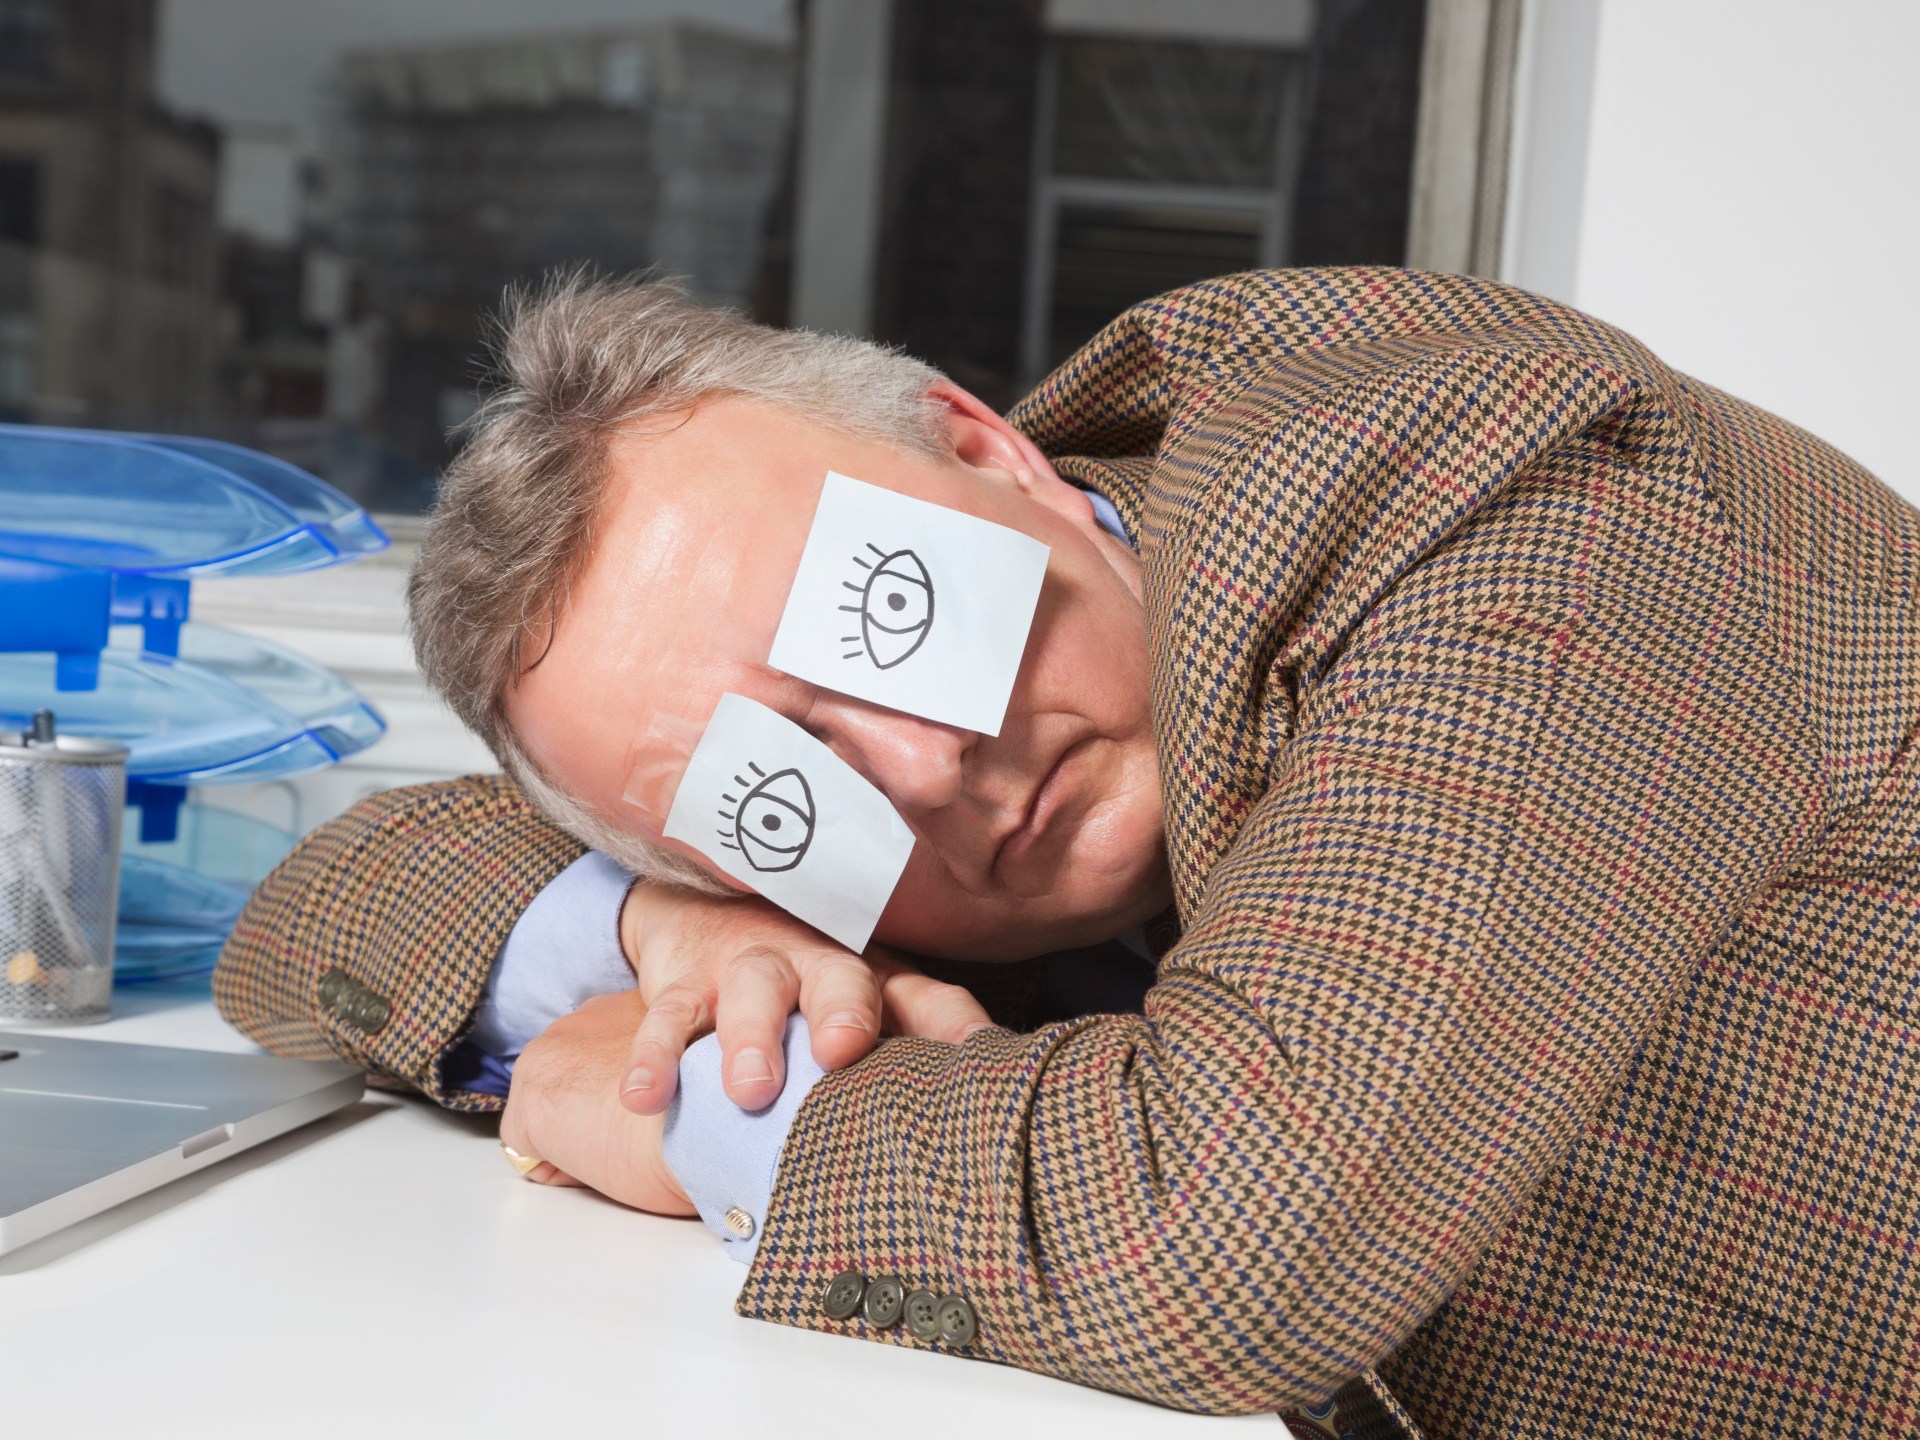 فوائد النوم خلال ساعات العمل والدراسة | أسلوب حياة – البوكس نيوز